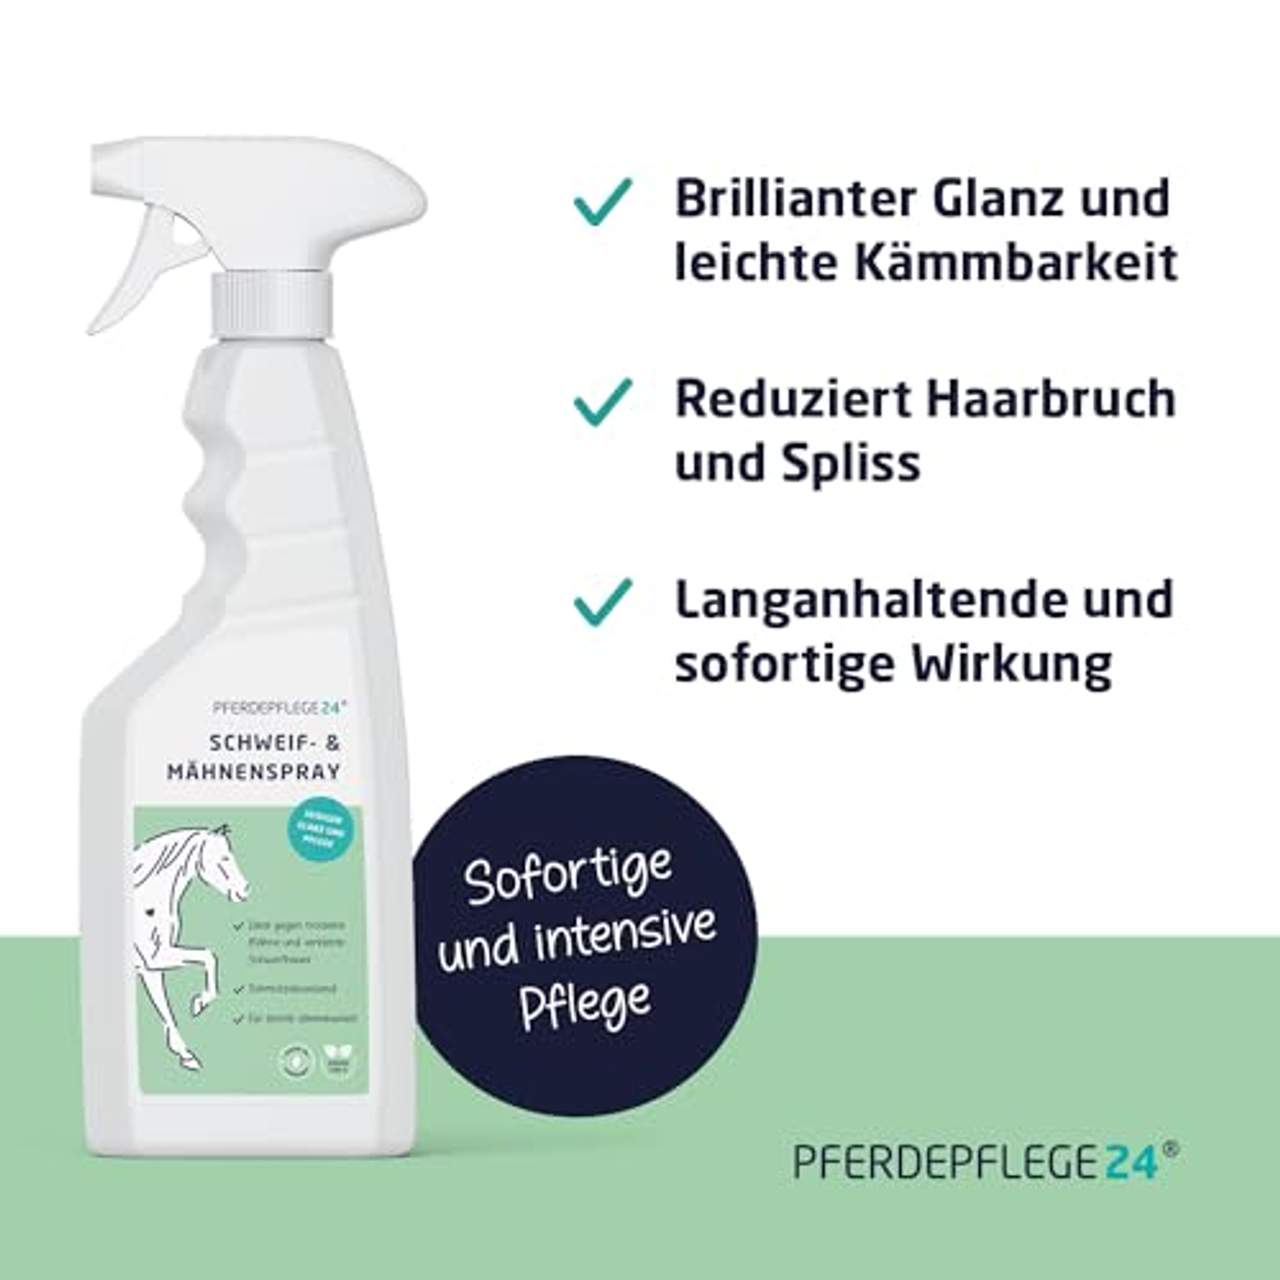 PFERDEPFLEGE24 Schweif- & Mähnenspray